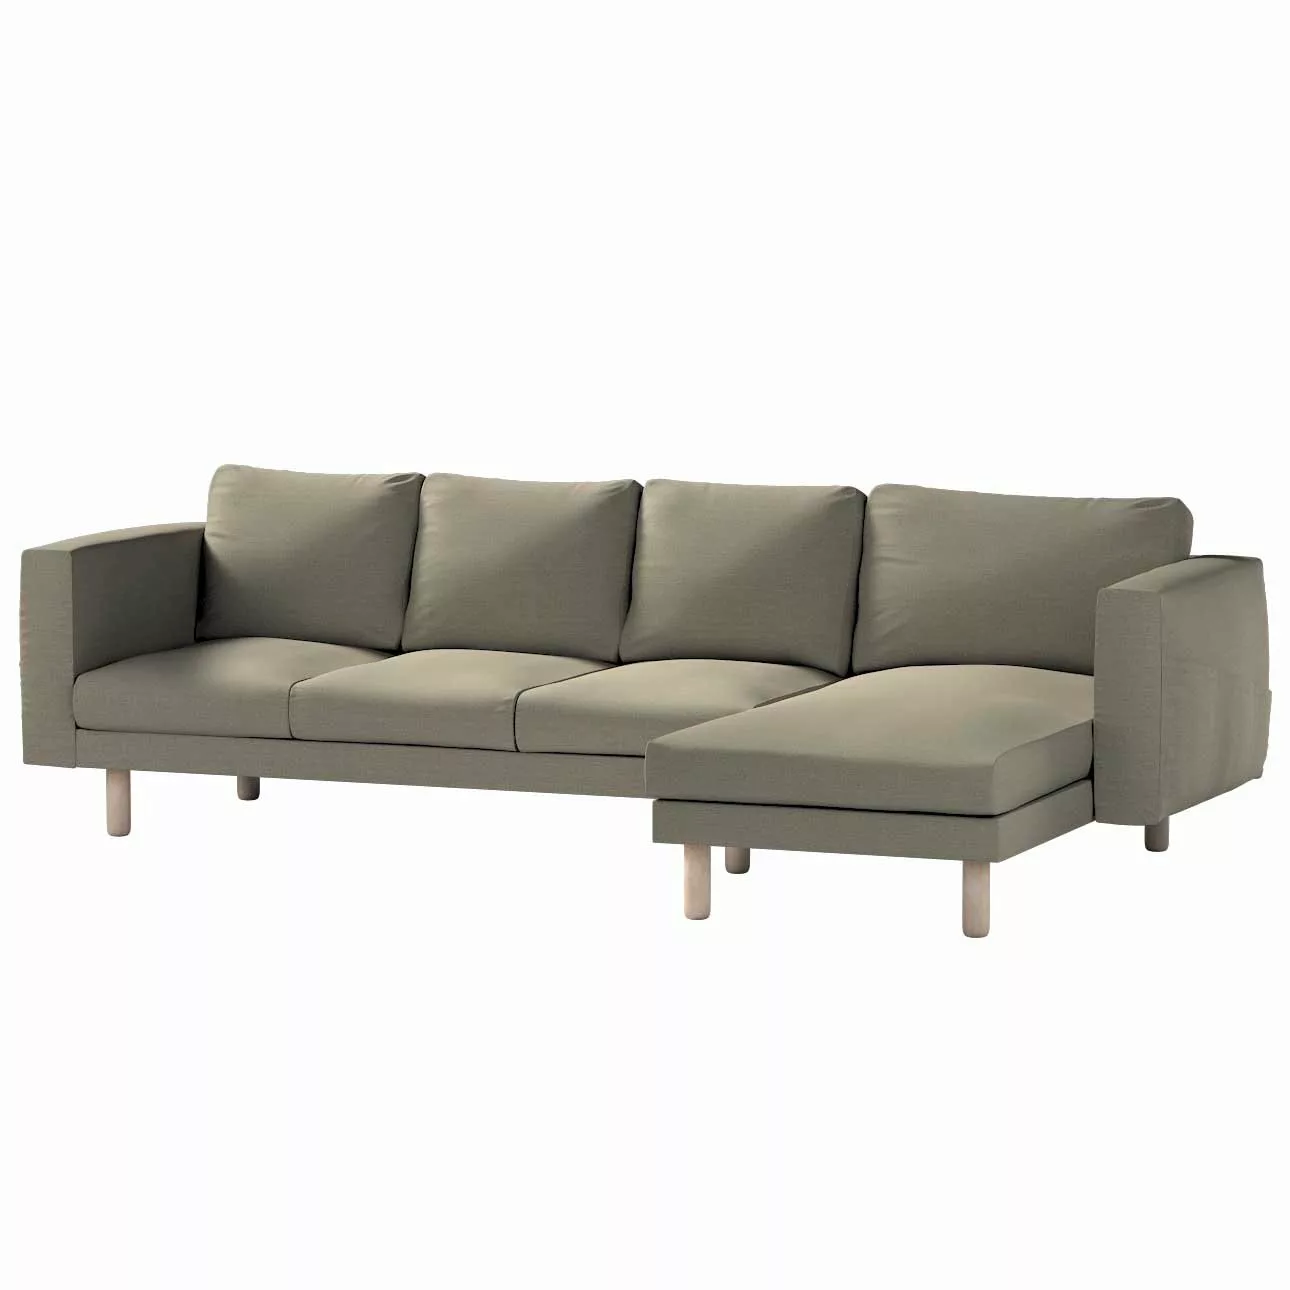 Bezug für Norsborg 4-Sitzer Sofa mit Recamiere, grau-braun, Norsborg Bezug günstig online kaufen